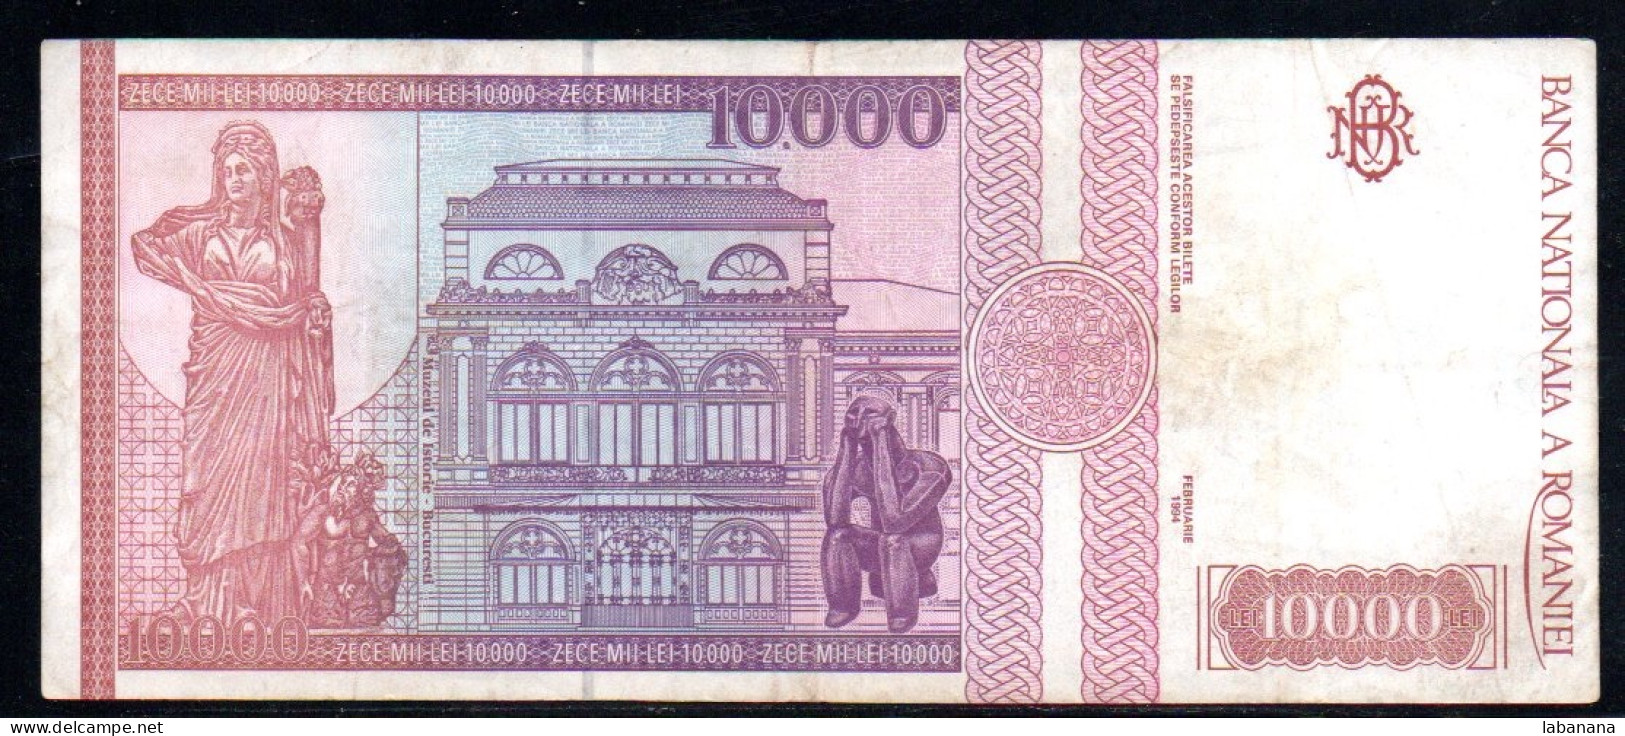 659-Roumanie 10 000 Lei 1994 C0001 - Romania